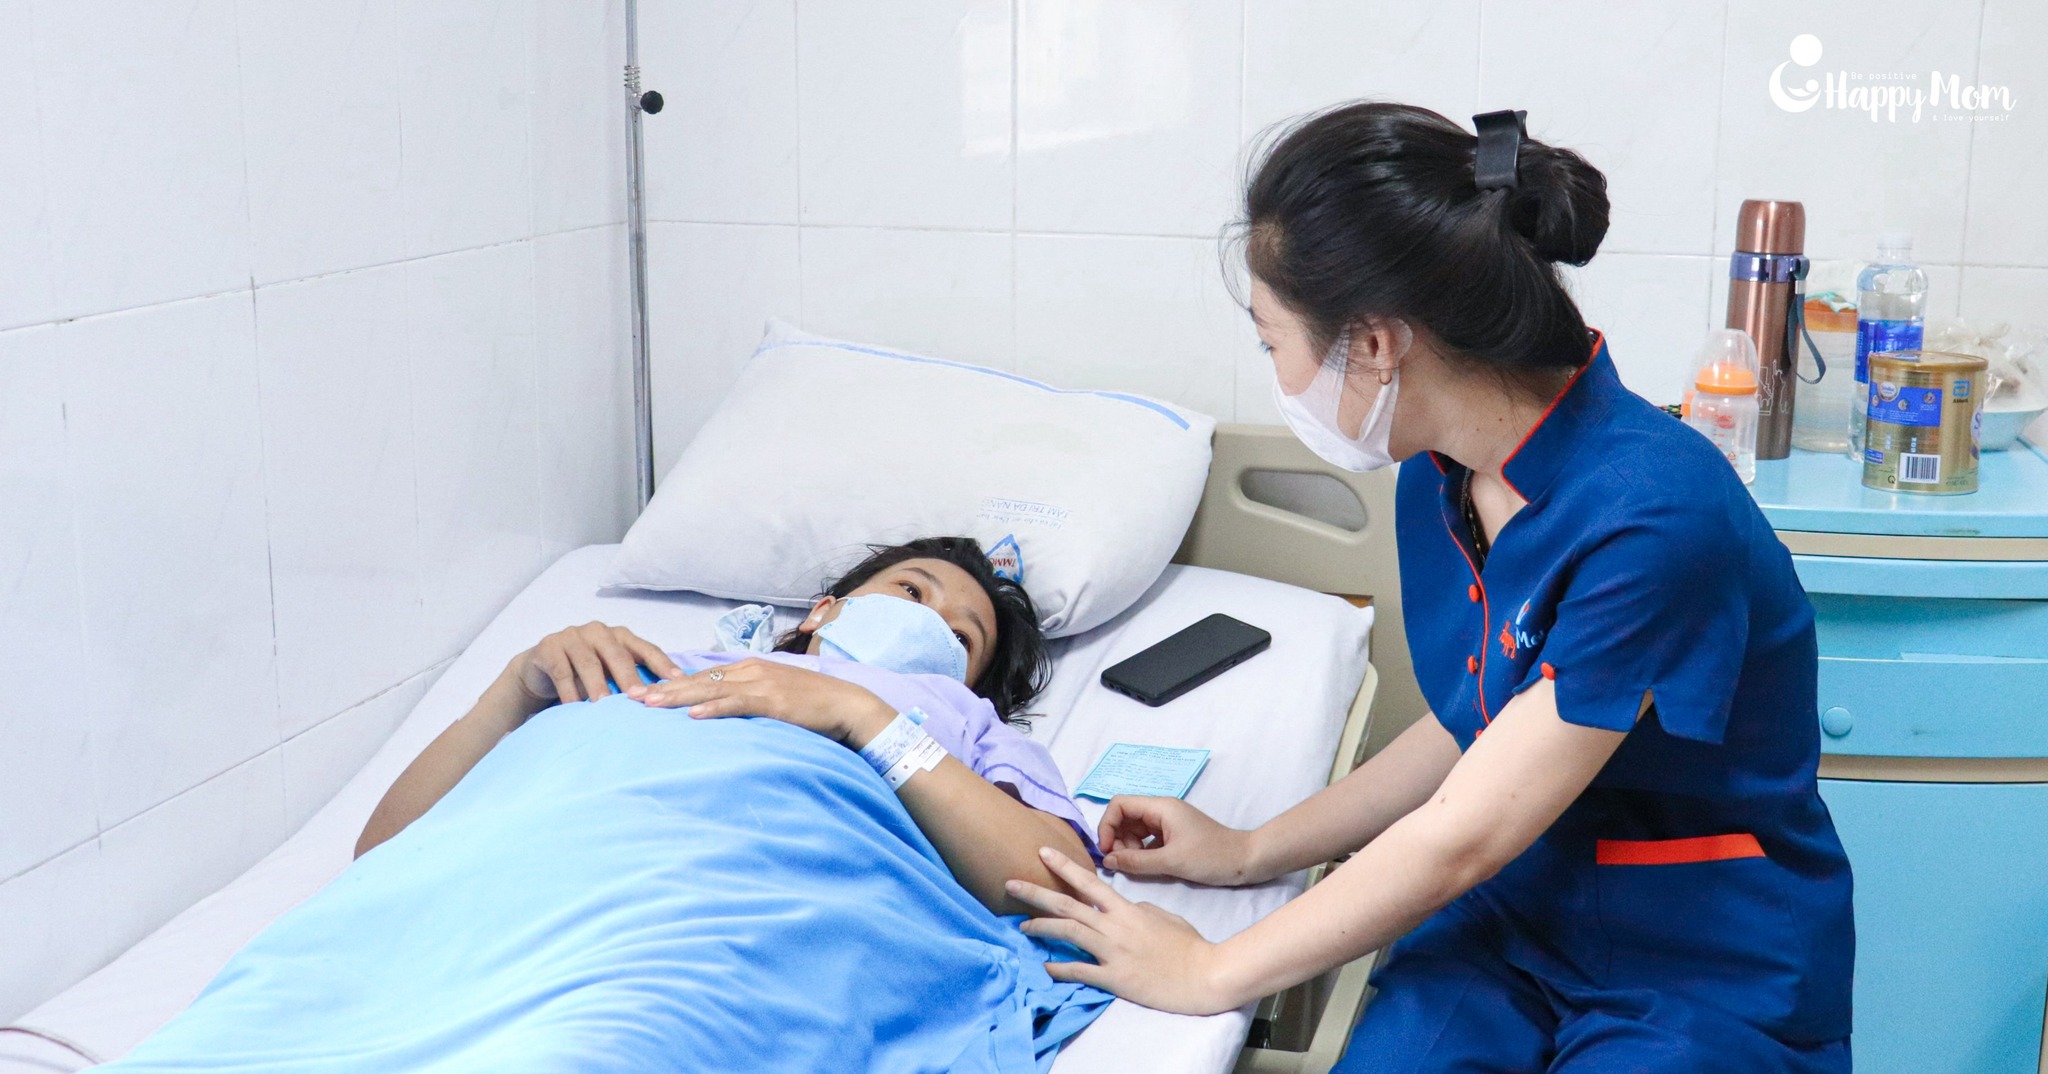 Top 8 Dịch vụ chăm sóc mẹ và bé uy tín nhất Đà Nẵng -  Happy Mom Đà Nẵng